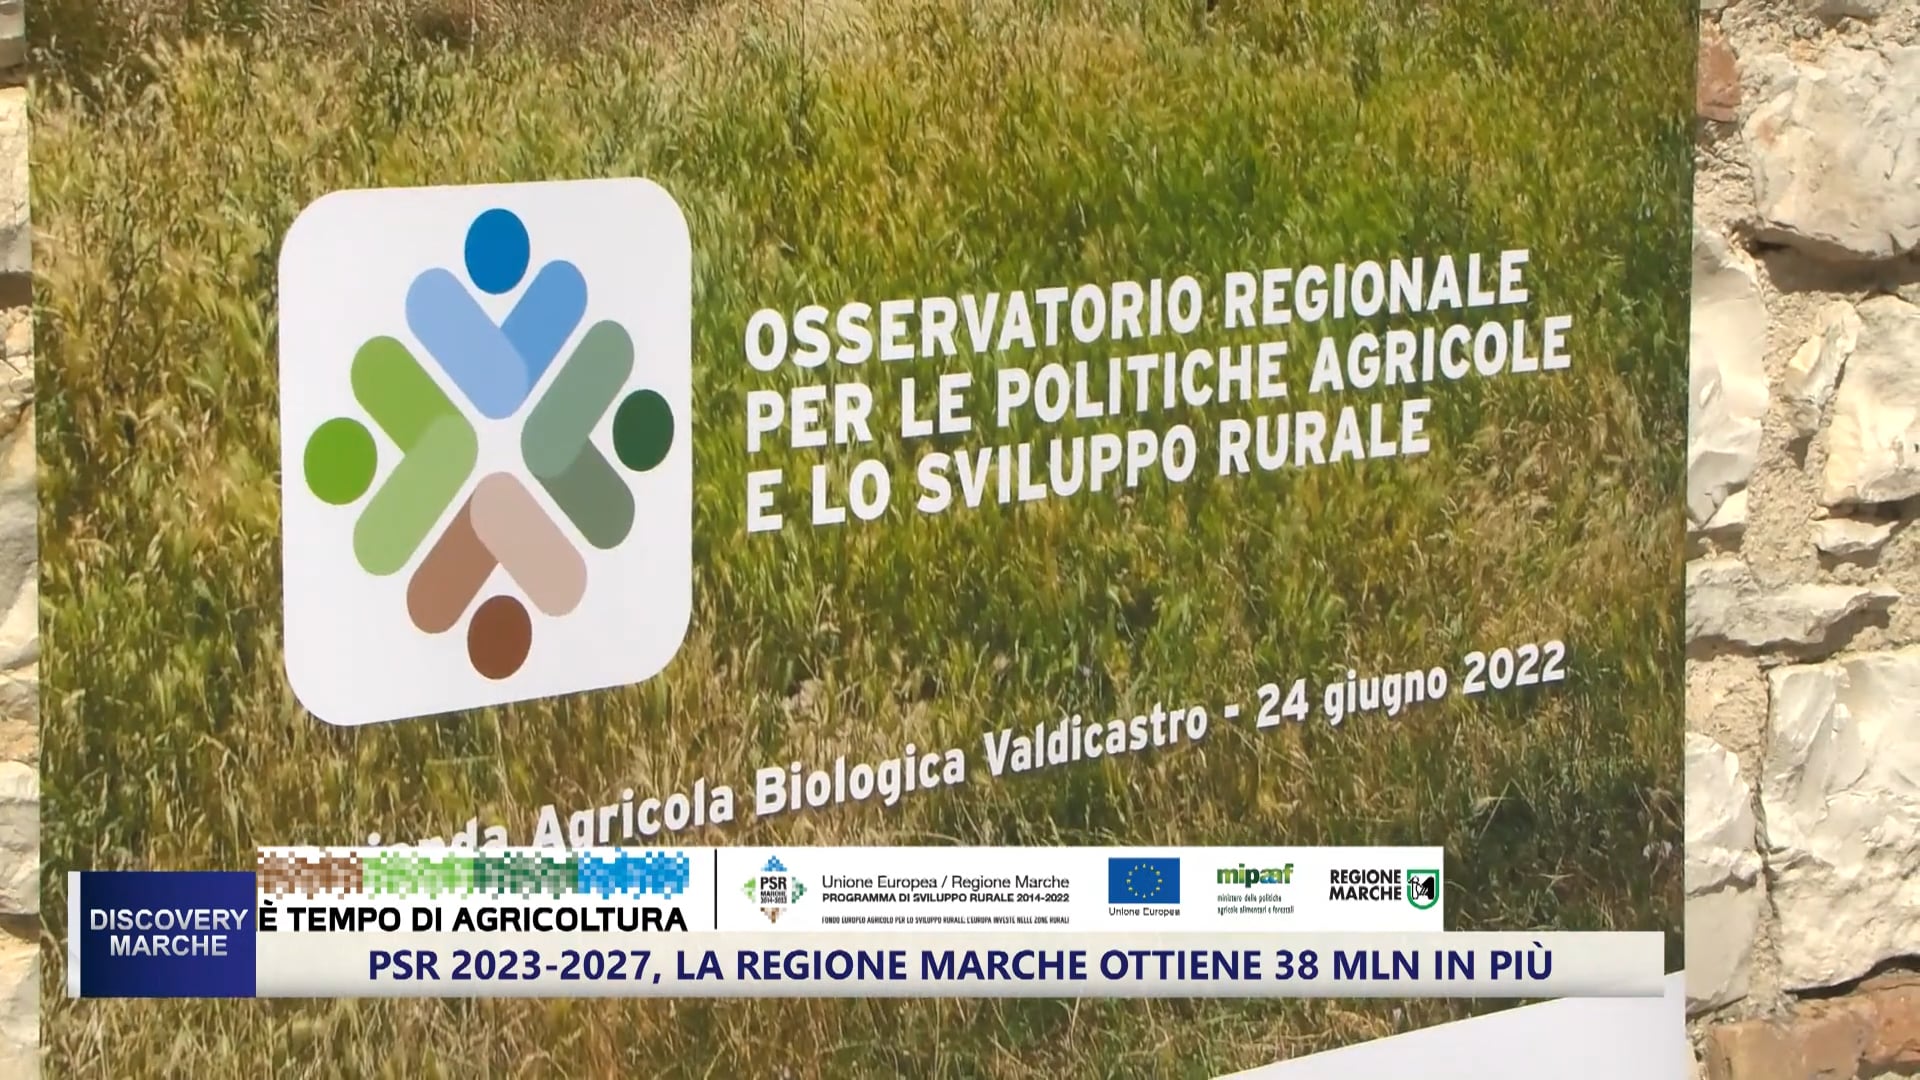 Più risorse e avvio all'enoturismo, l’Osservatorio regionale per le politiche agricole e lo sviluppo rurale - VIDEO 